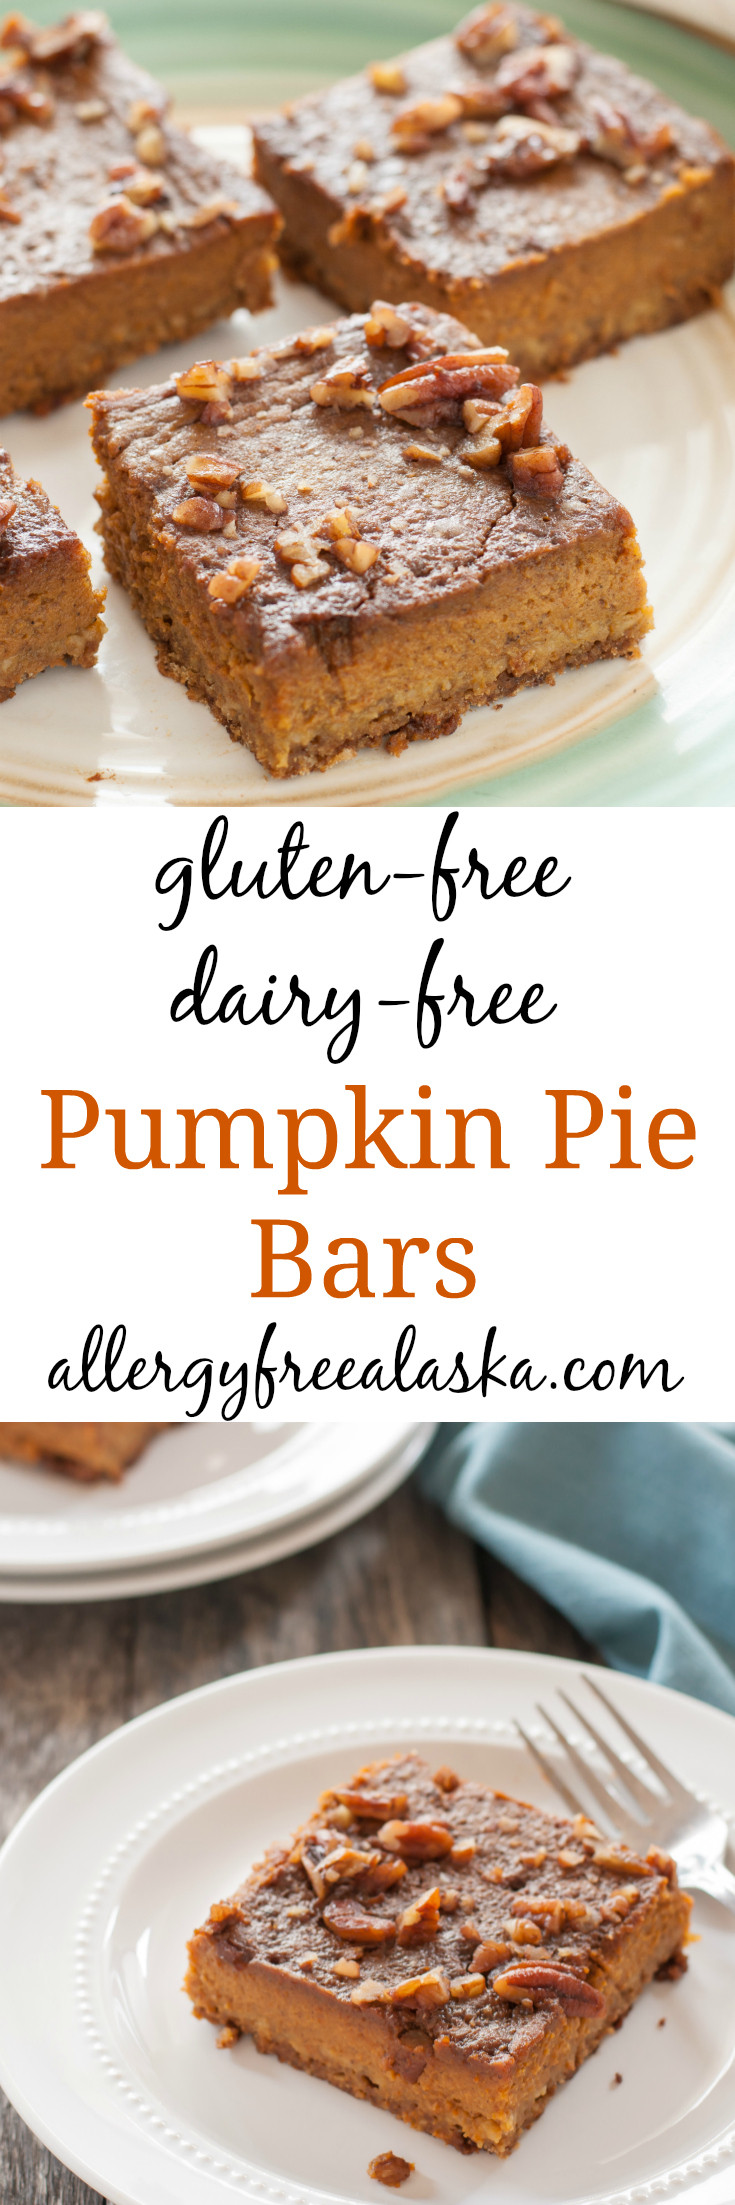 Gluten Dairy Free Pumpkin Pie
 gluten free dairy free pumpkin pie bar recipe from allergy